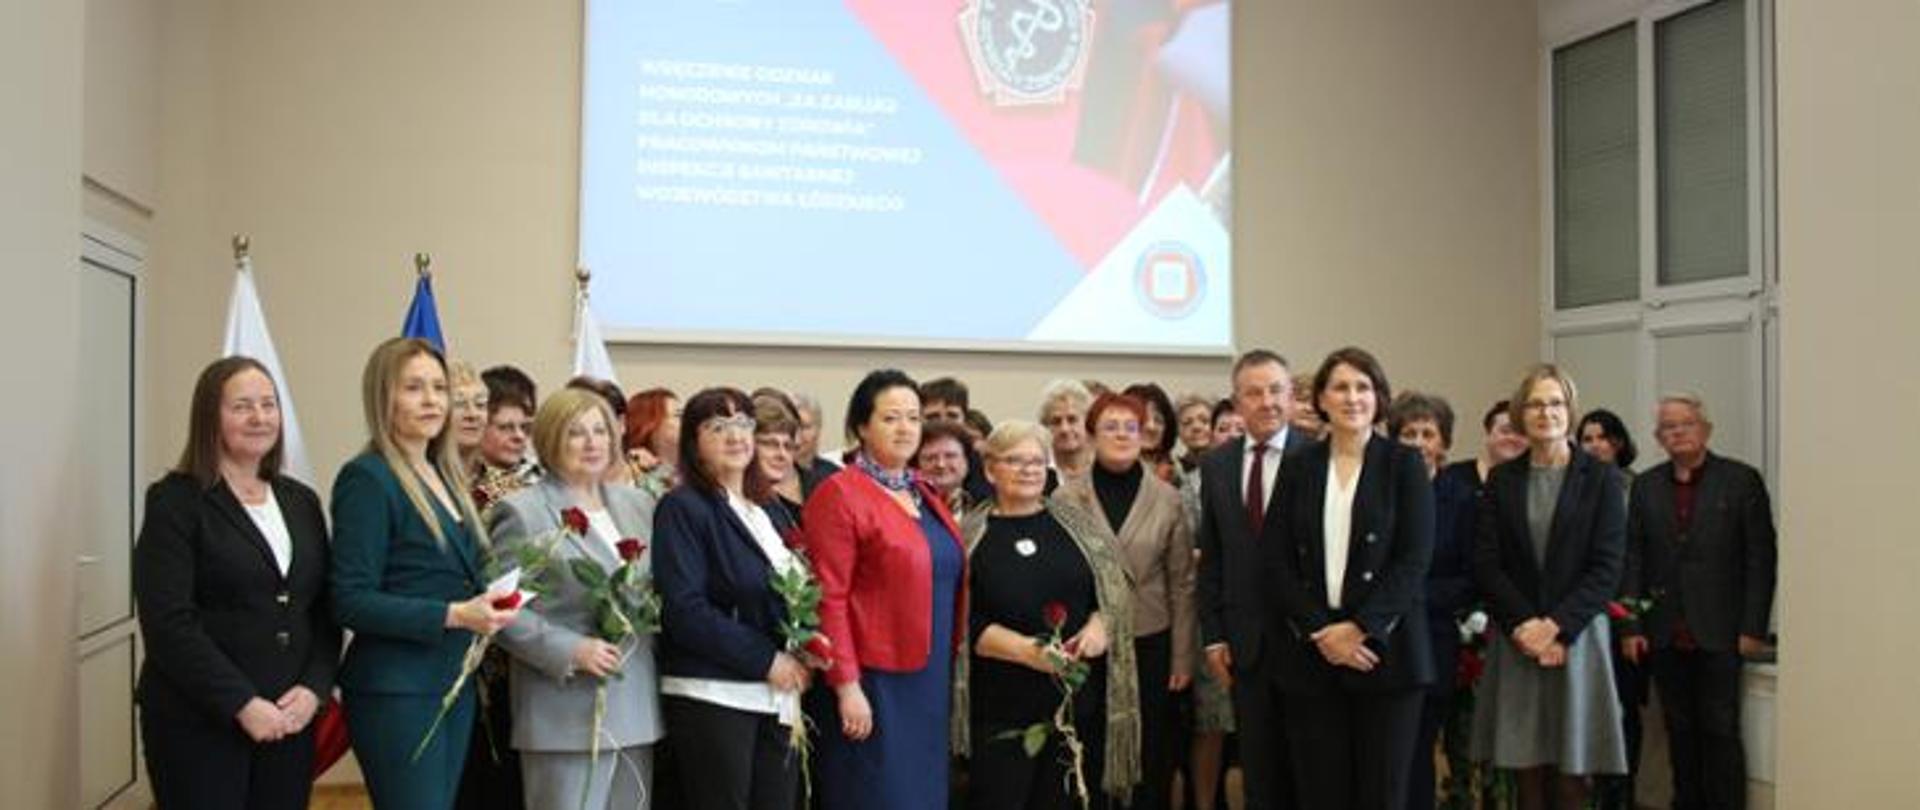 Uroczystość wręczenia odznak honorowych „Za zasługi dla ochrony zdrowia” pracownikom Państwowej Inspekcji Sanitarnej województwa łódzkiego